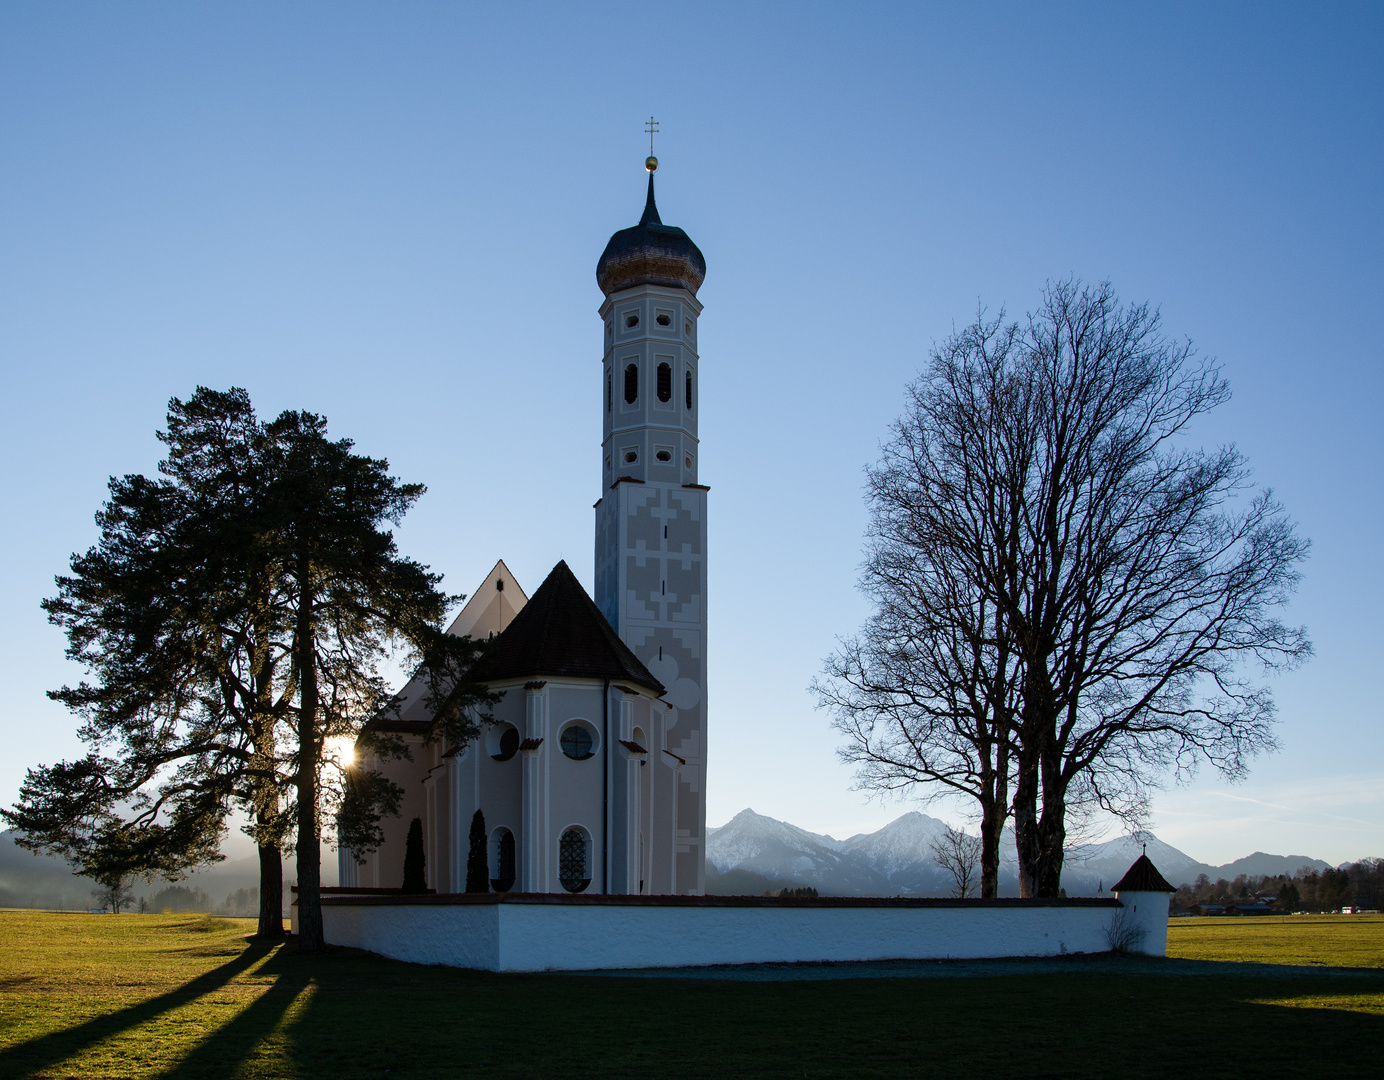 St. Coloman Kirche in Schwangau bei Füssen